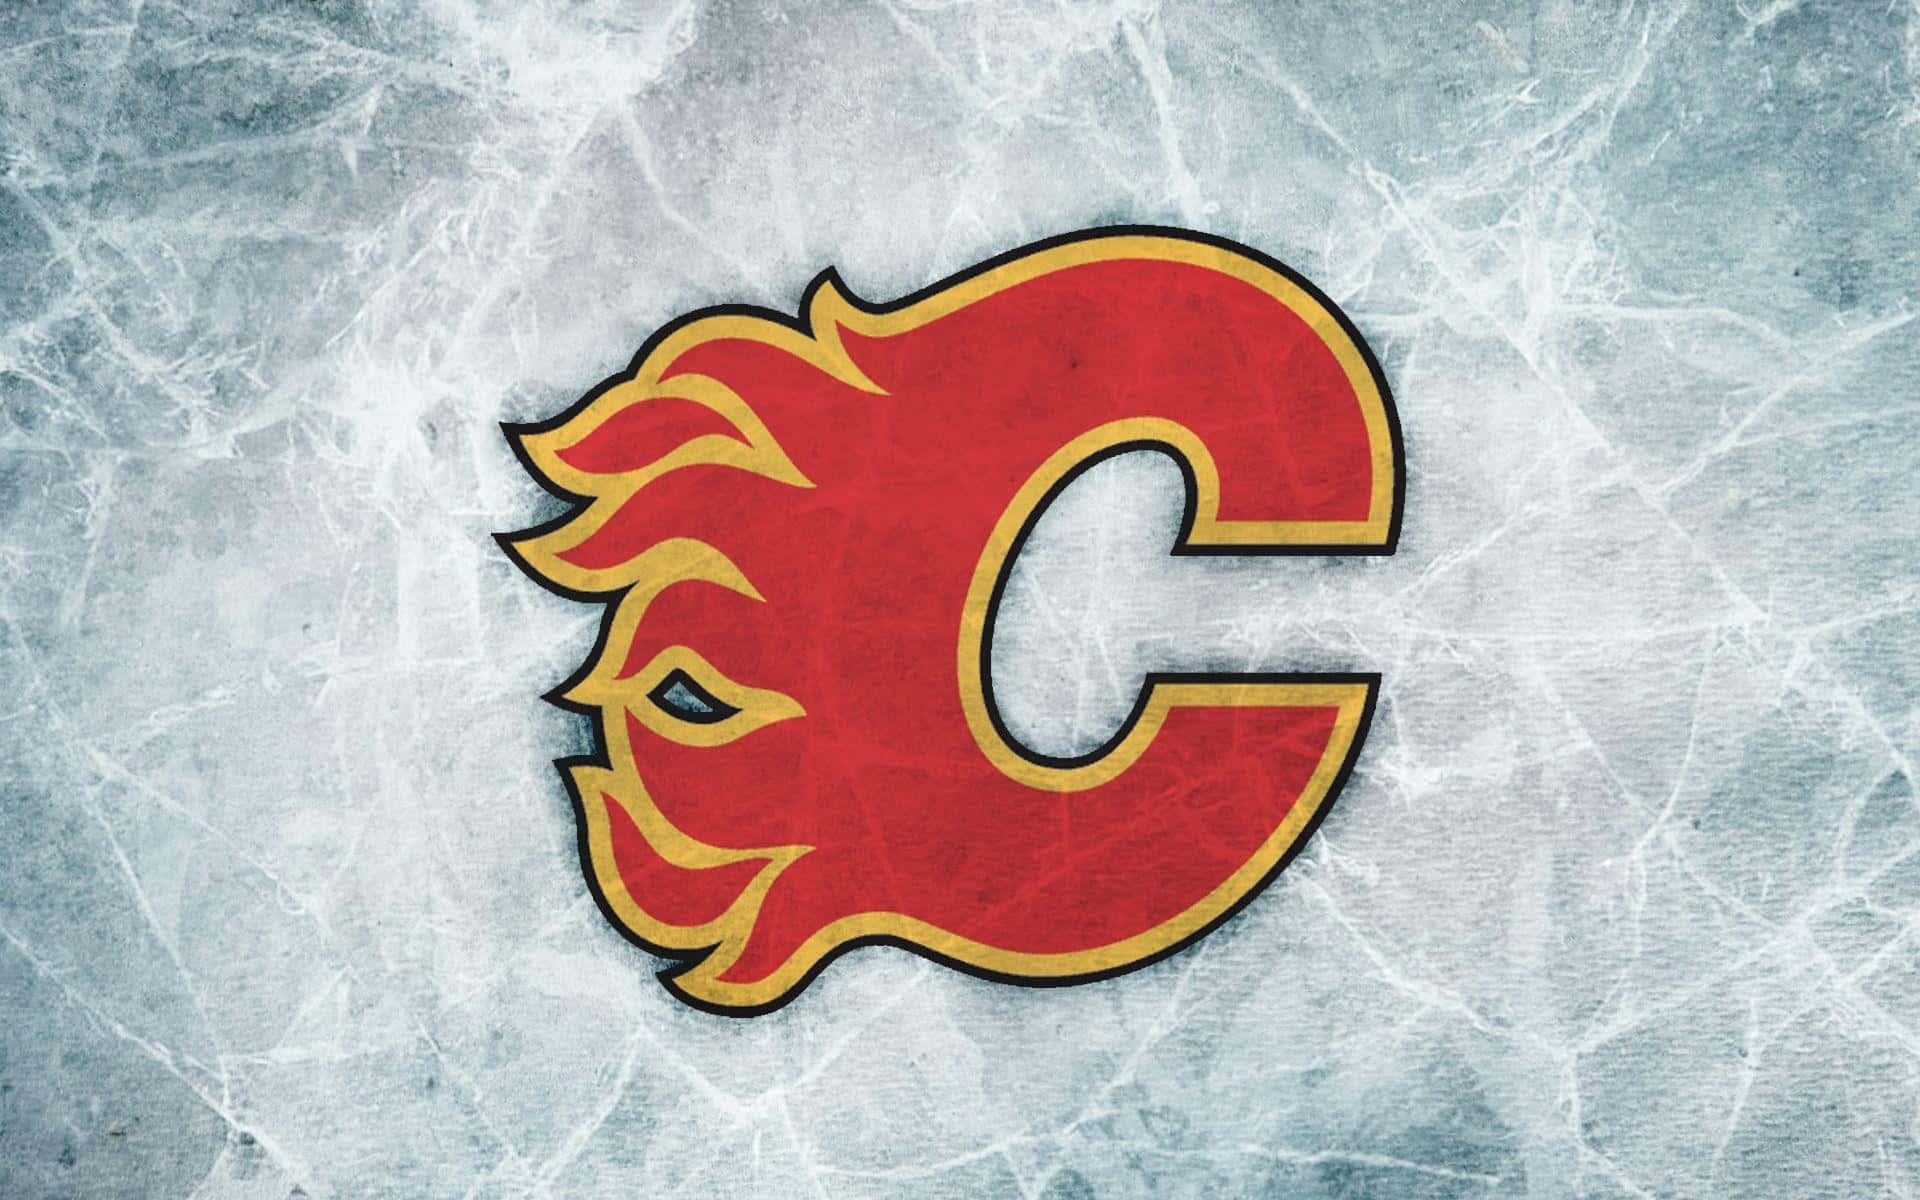 Enlogotyp Av Calgary Flames På Is